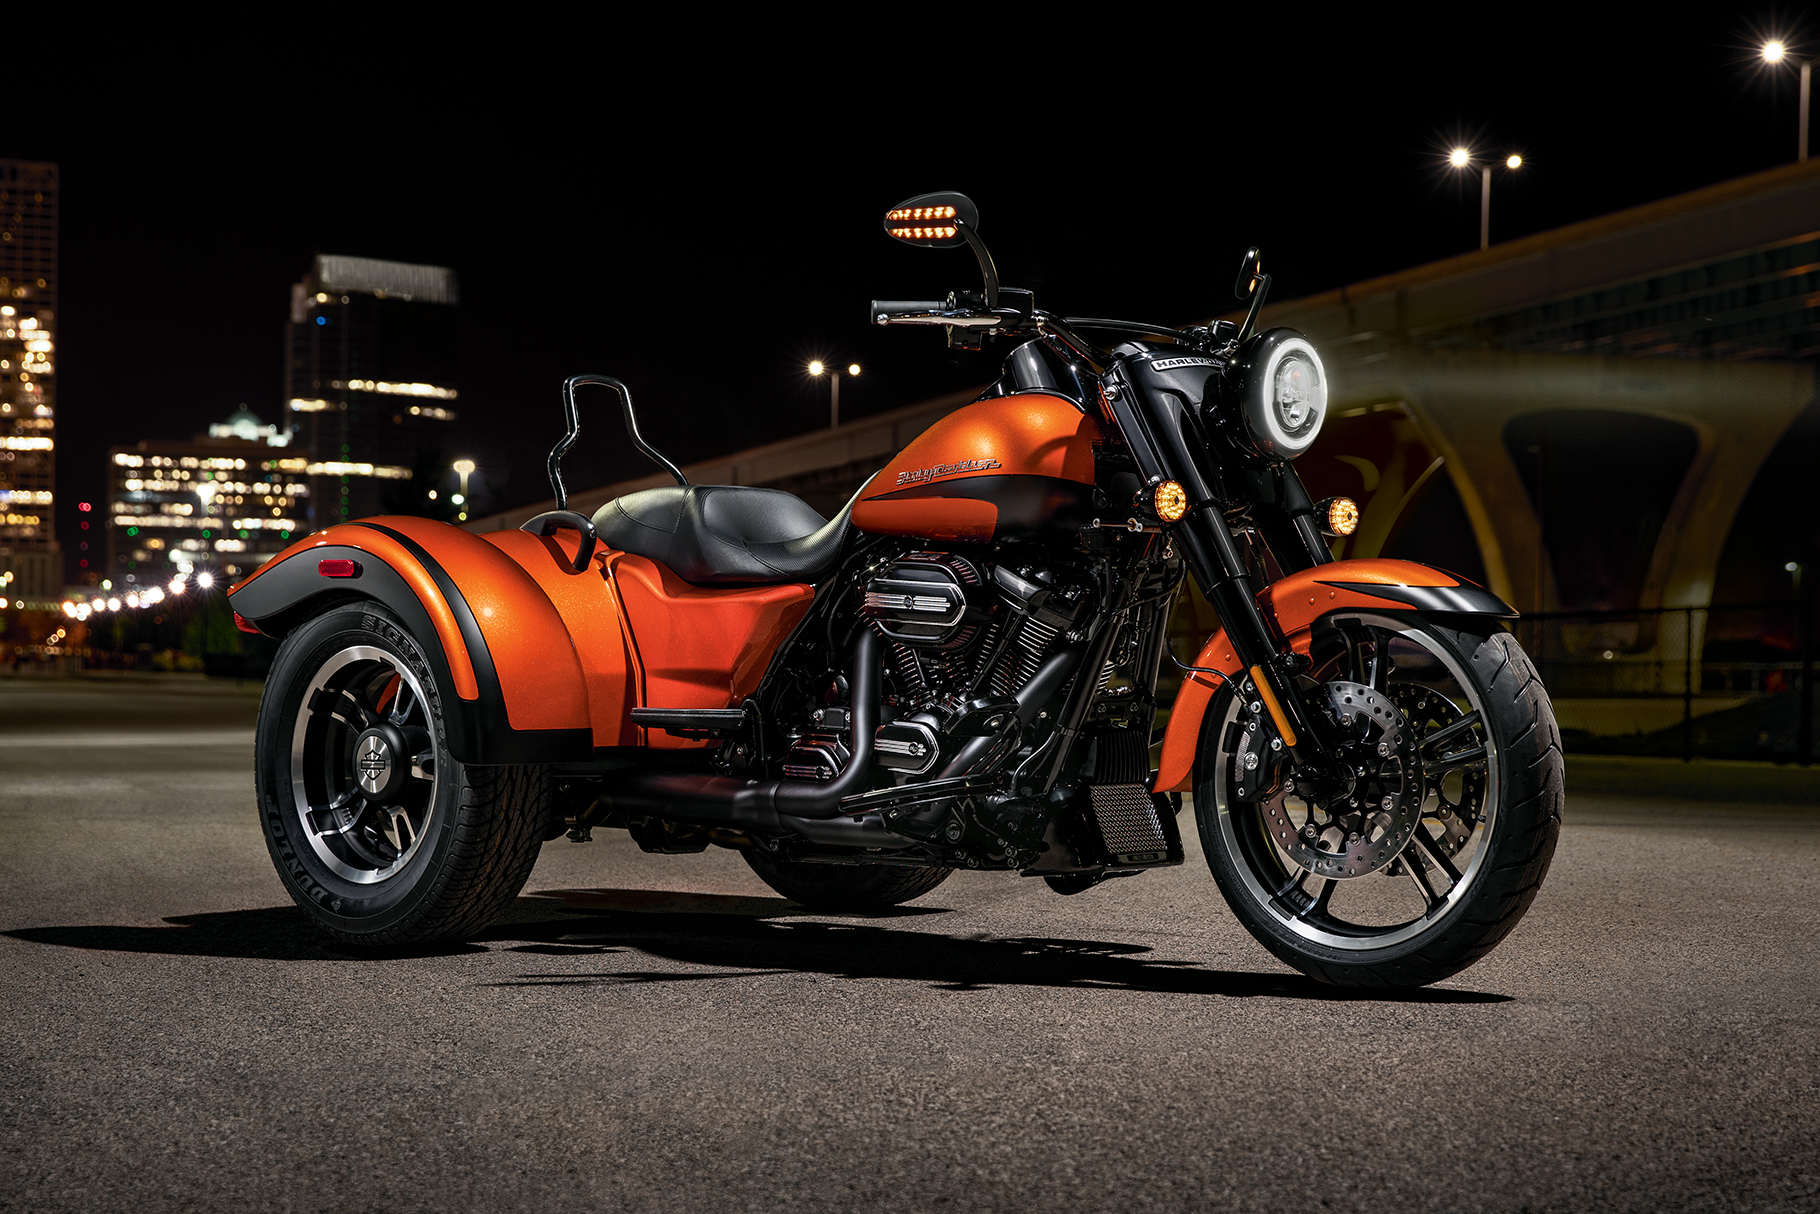  2019 Freewheeler Motorcycle Harley Davidson USA